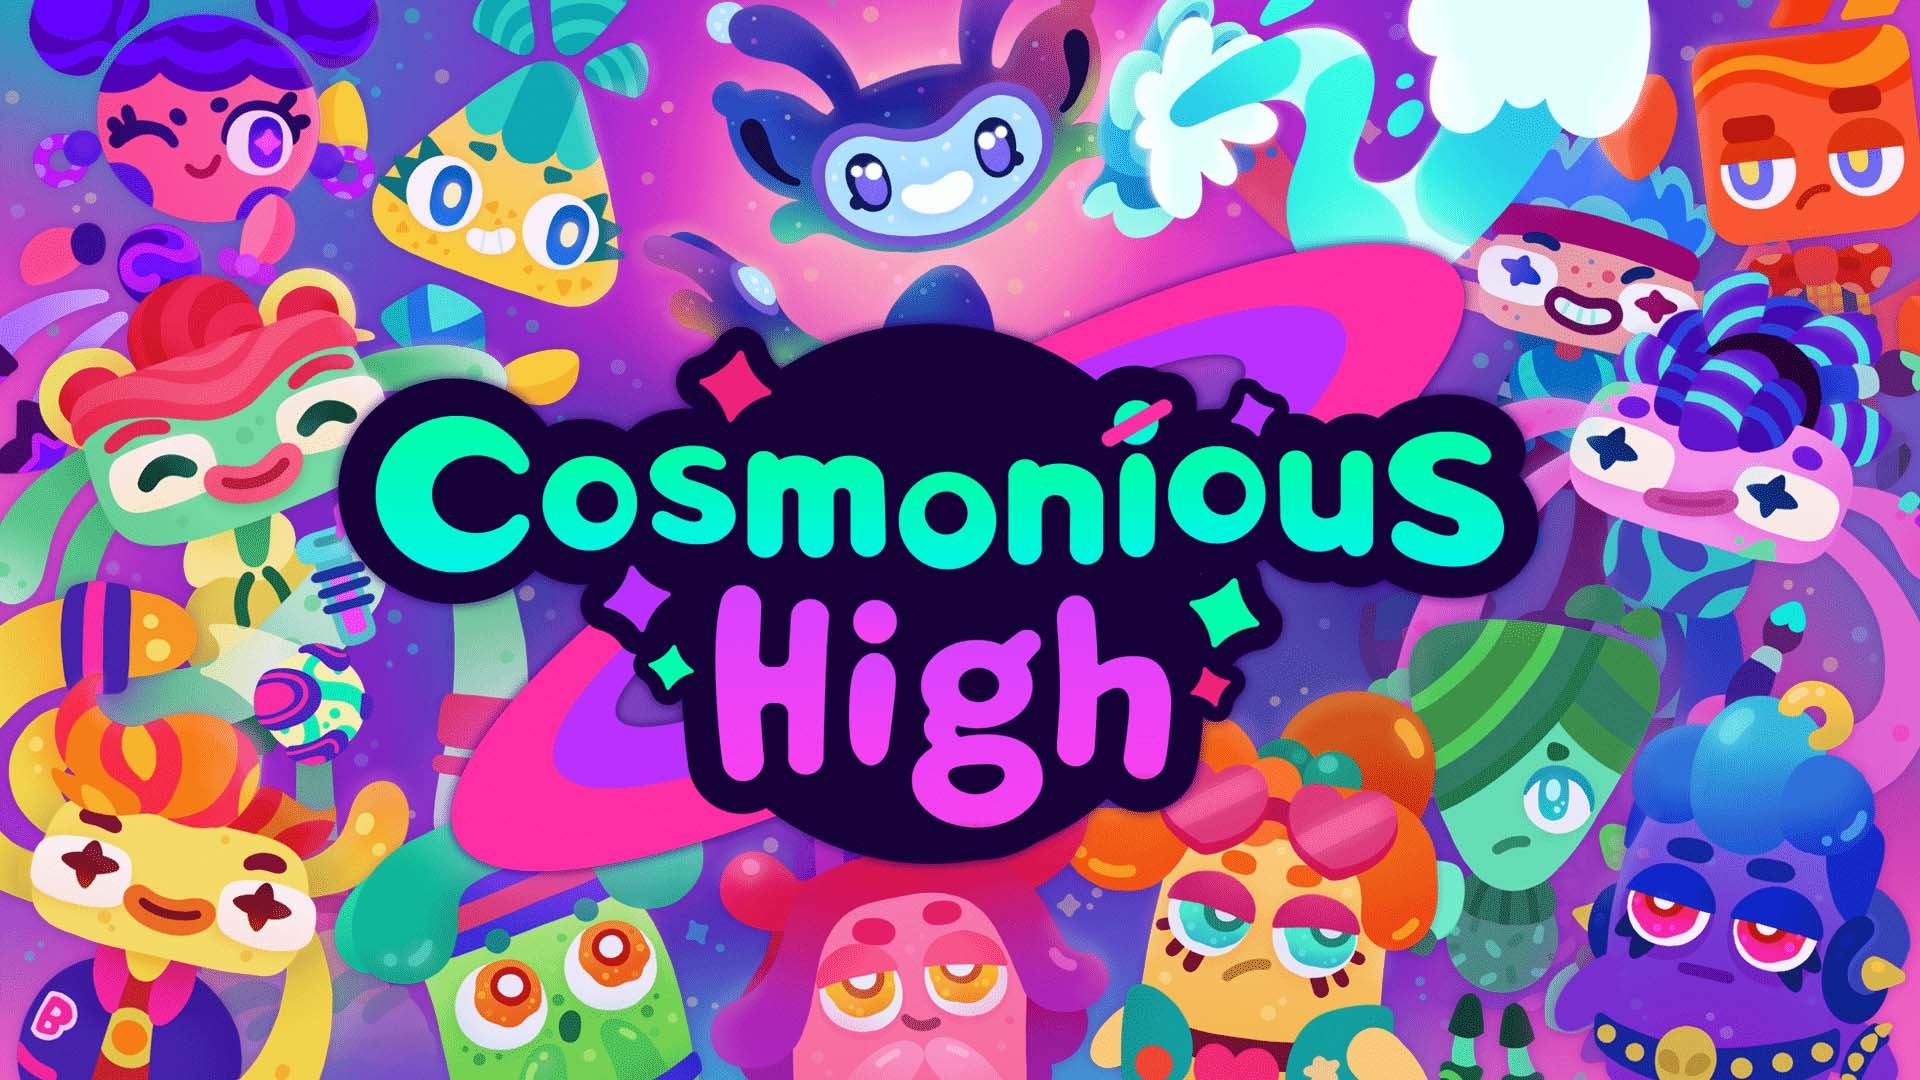 موجودات فضایی رنگارنگ در بازی Cosmonious High